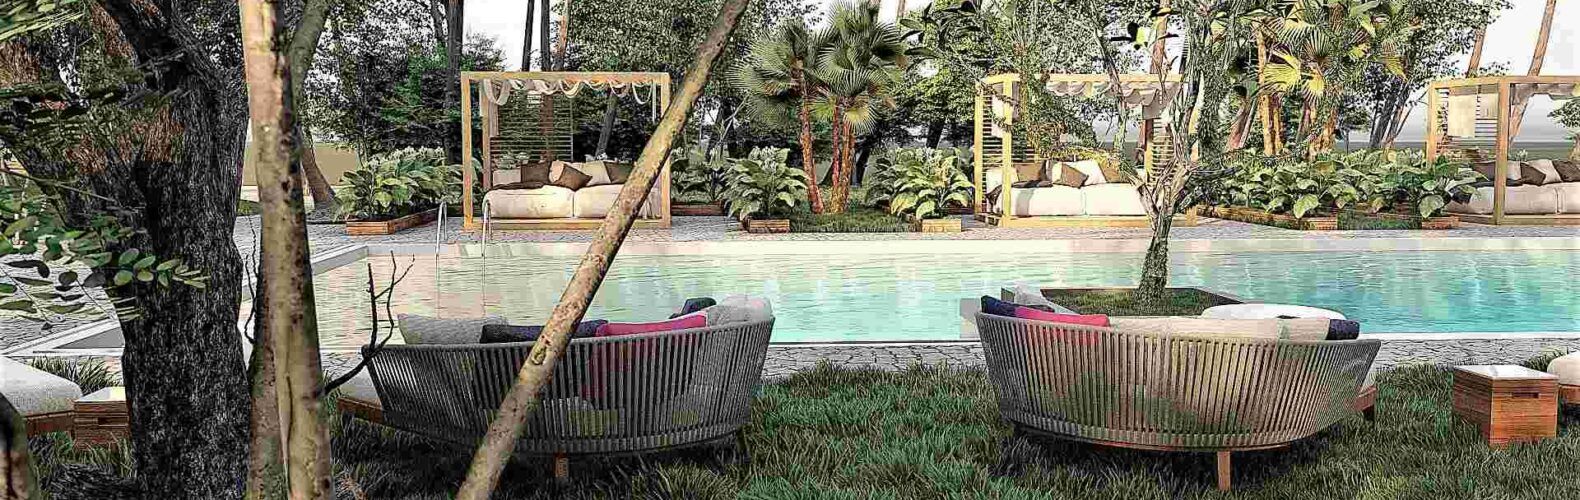 Διαμόρφωση του χώρου πισίνας και κήπου σε Ξενοδοχείο